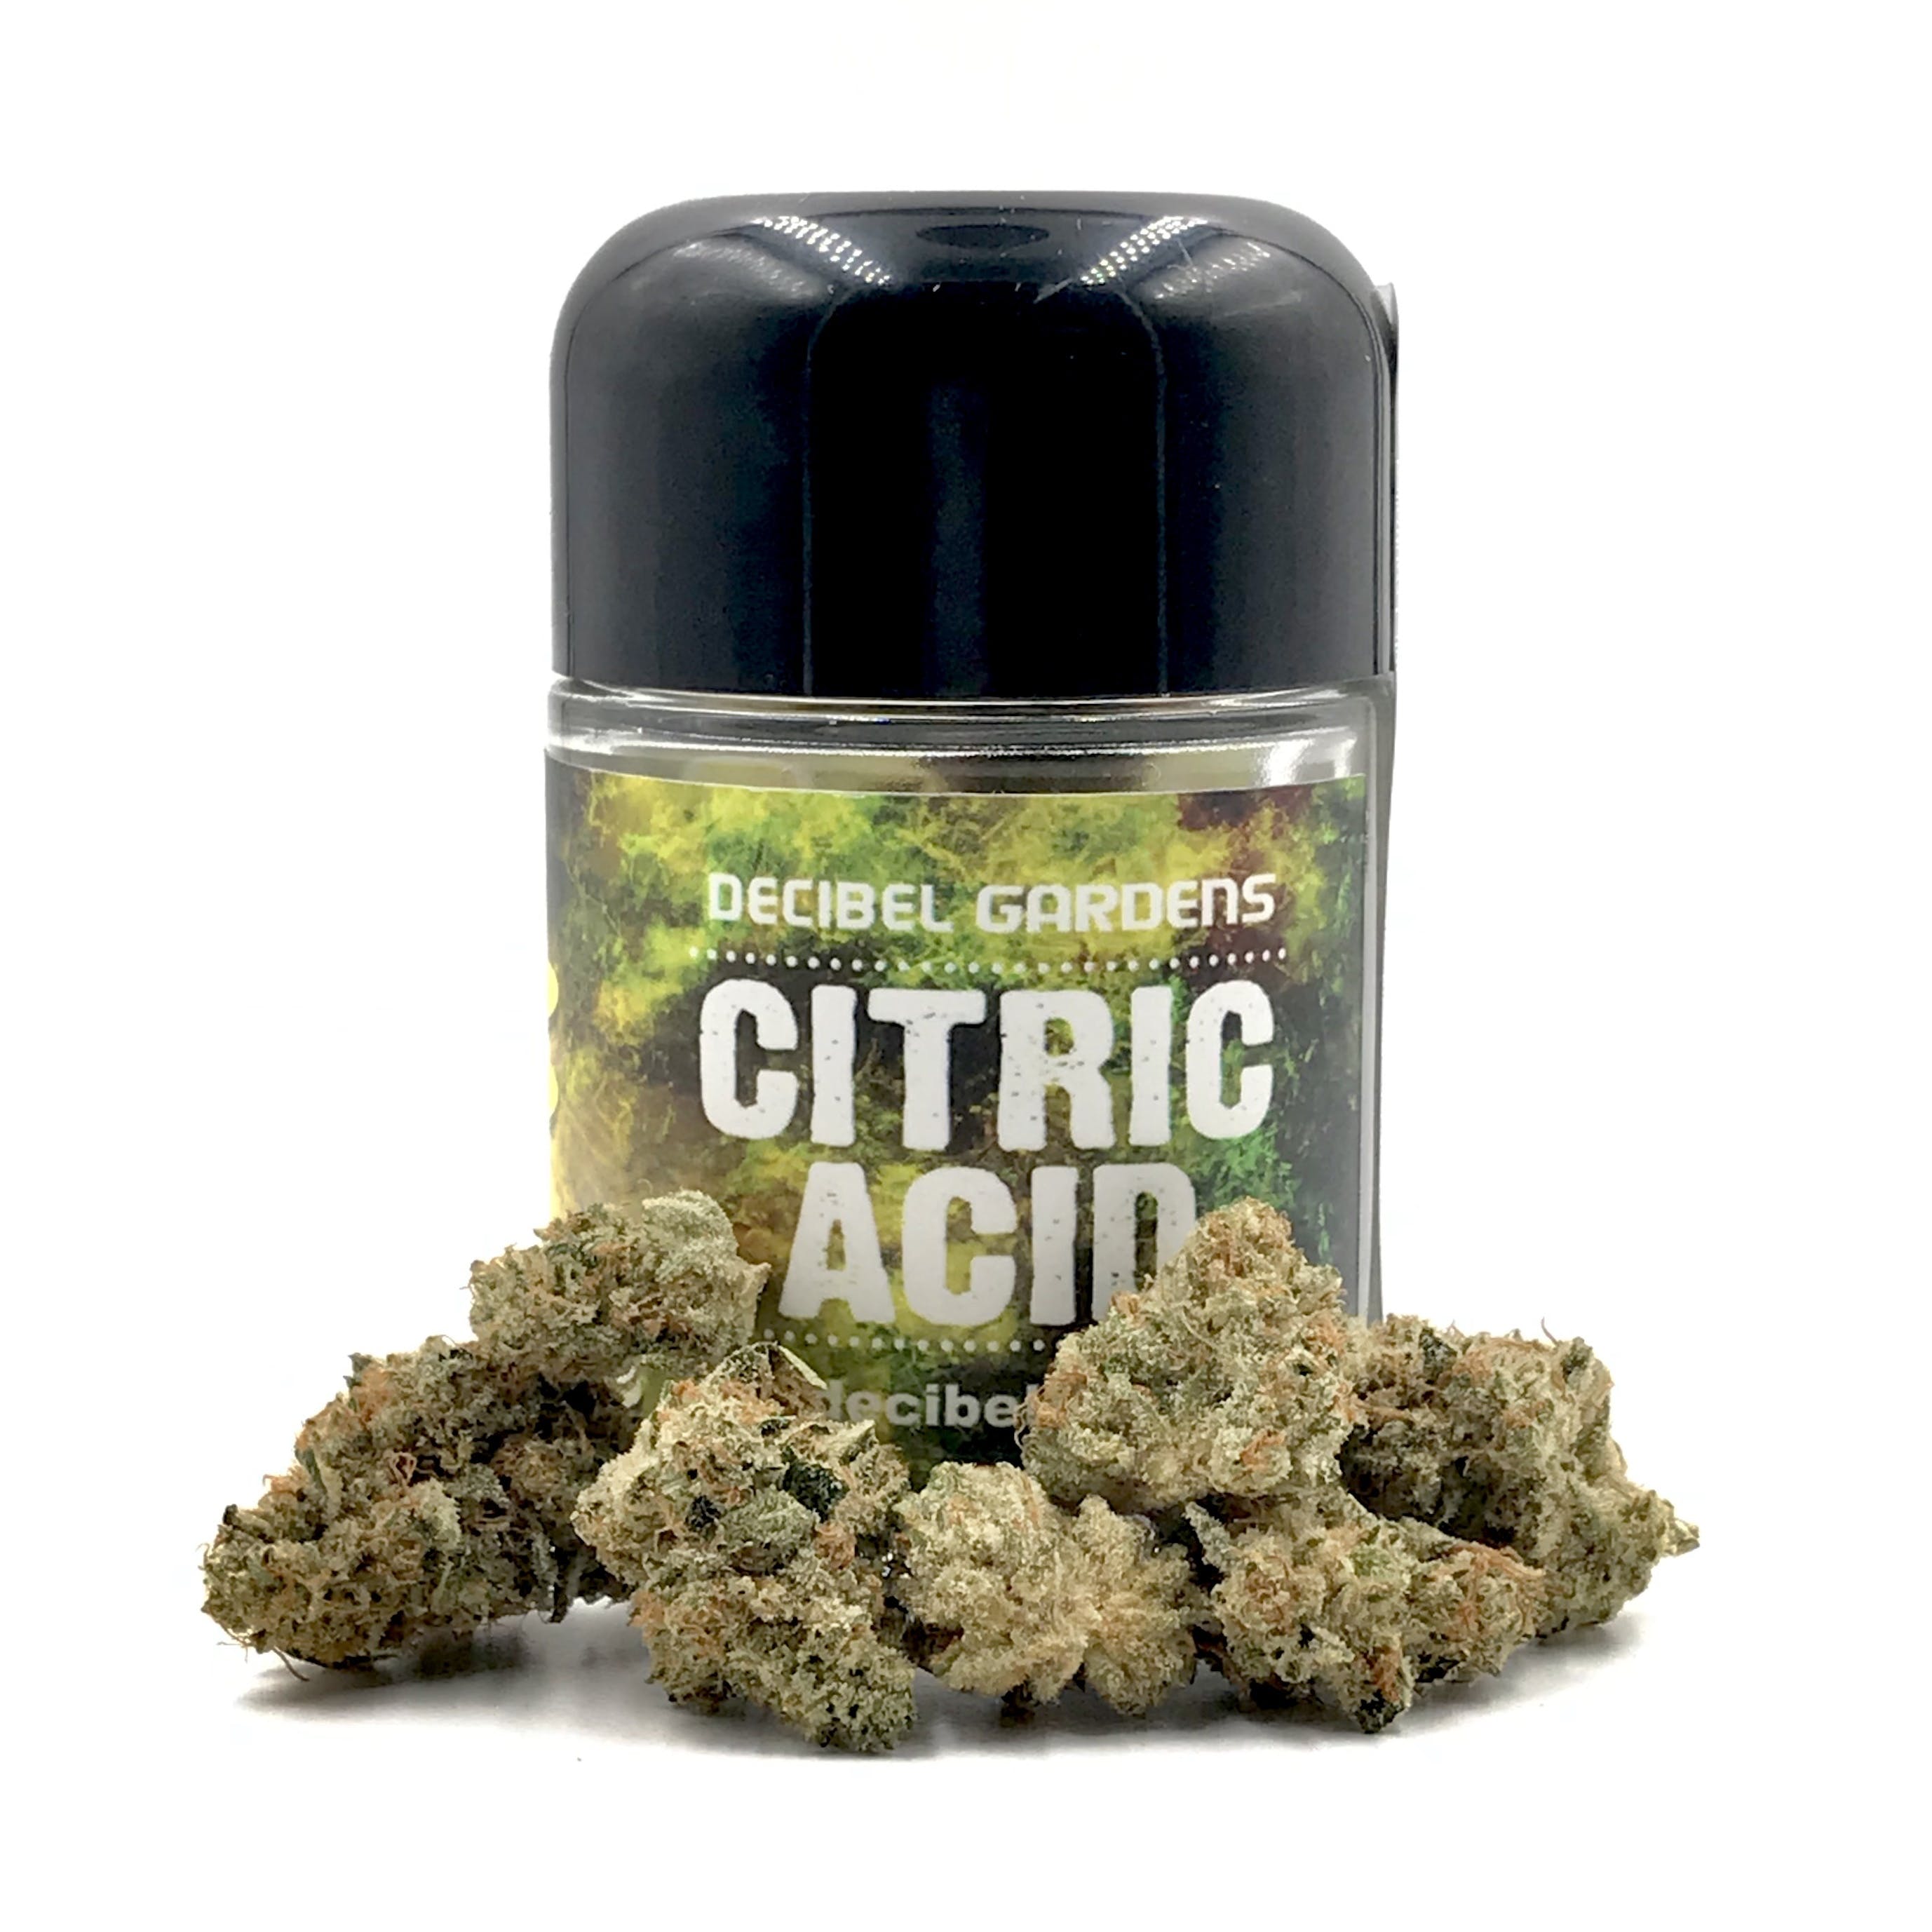 [1/8th] Citric Acid - Decibel Gardens